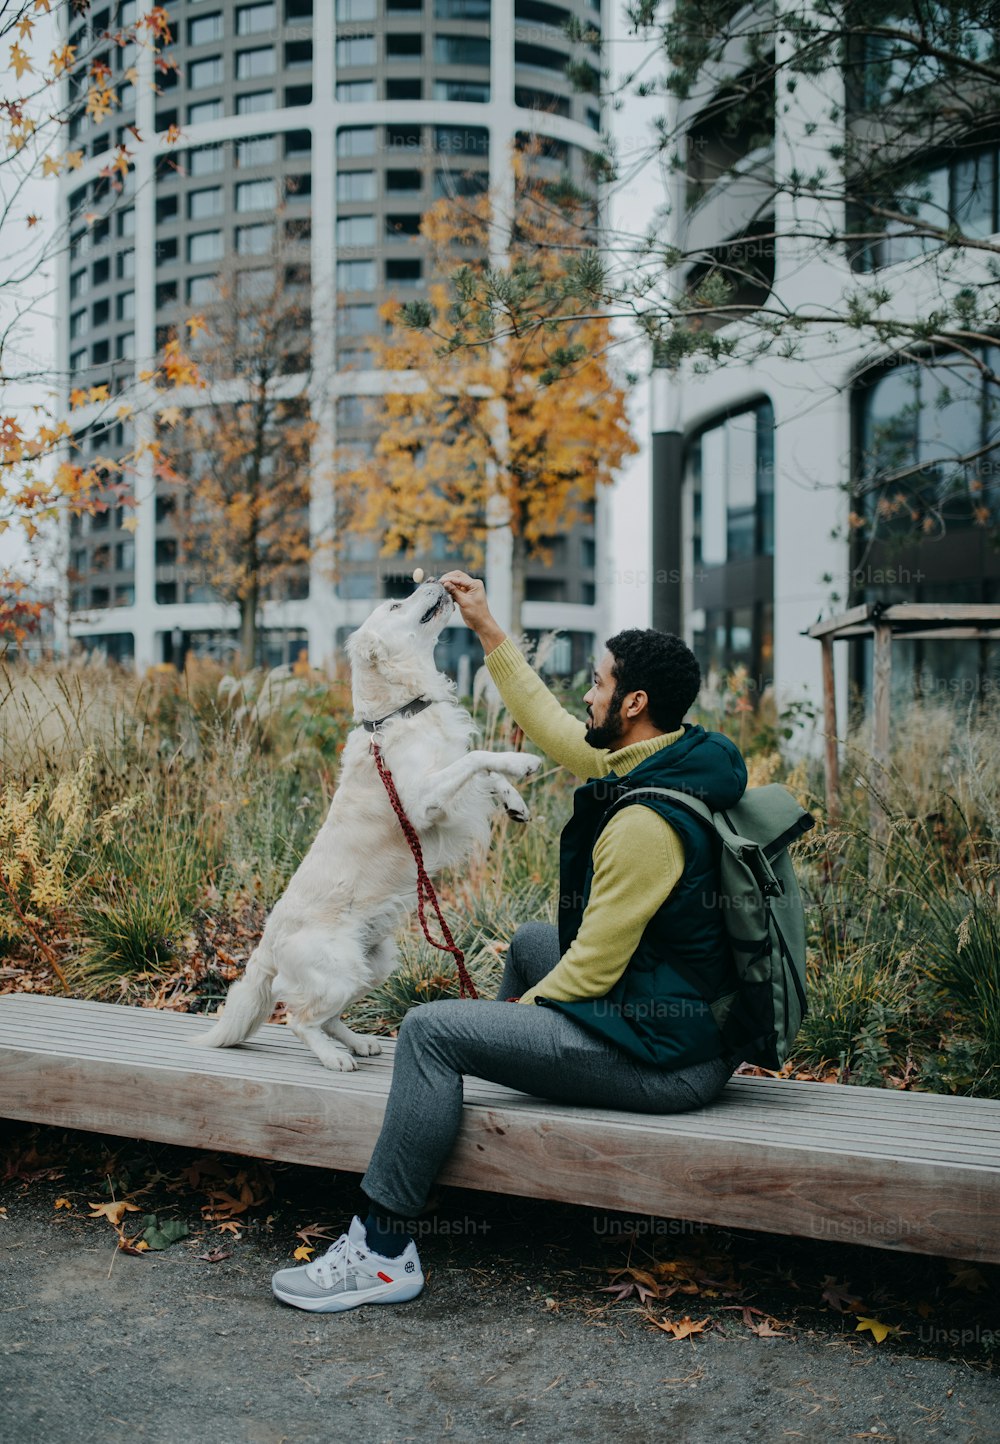 Une vue latérale d’un jeune homme assis sur un banc et dressant son chien à l’extérieur en ville.